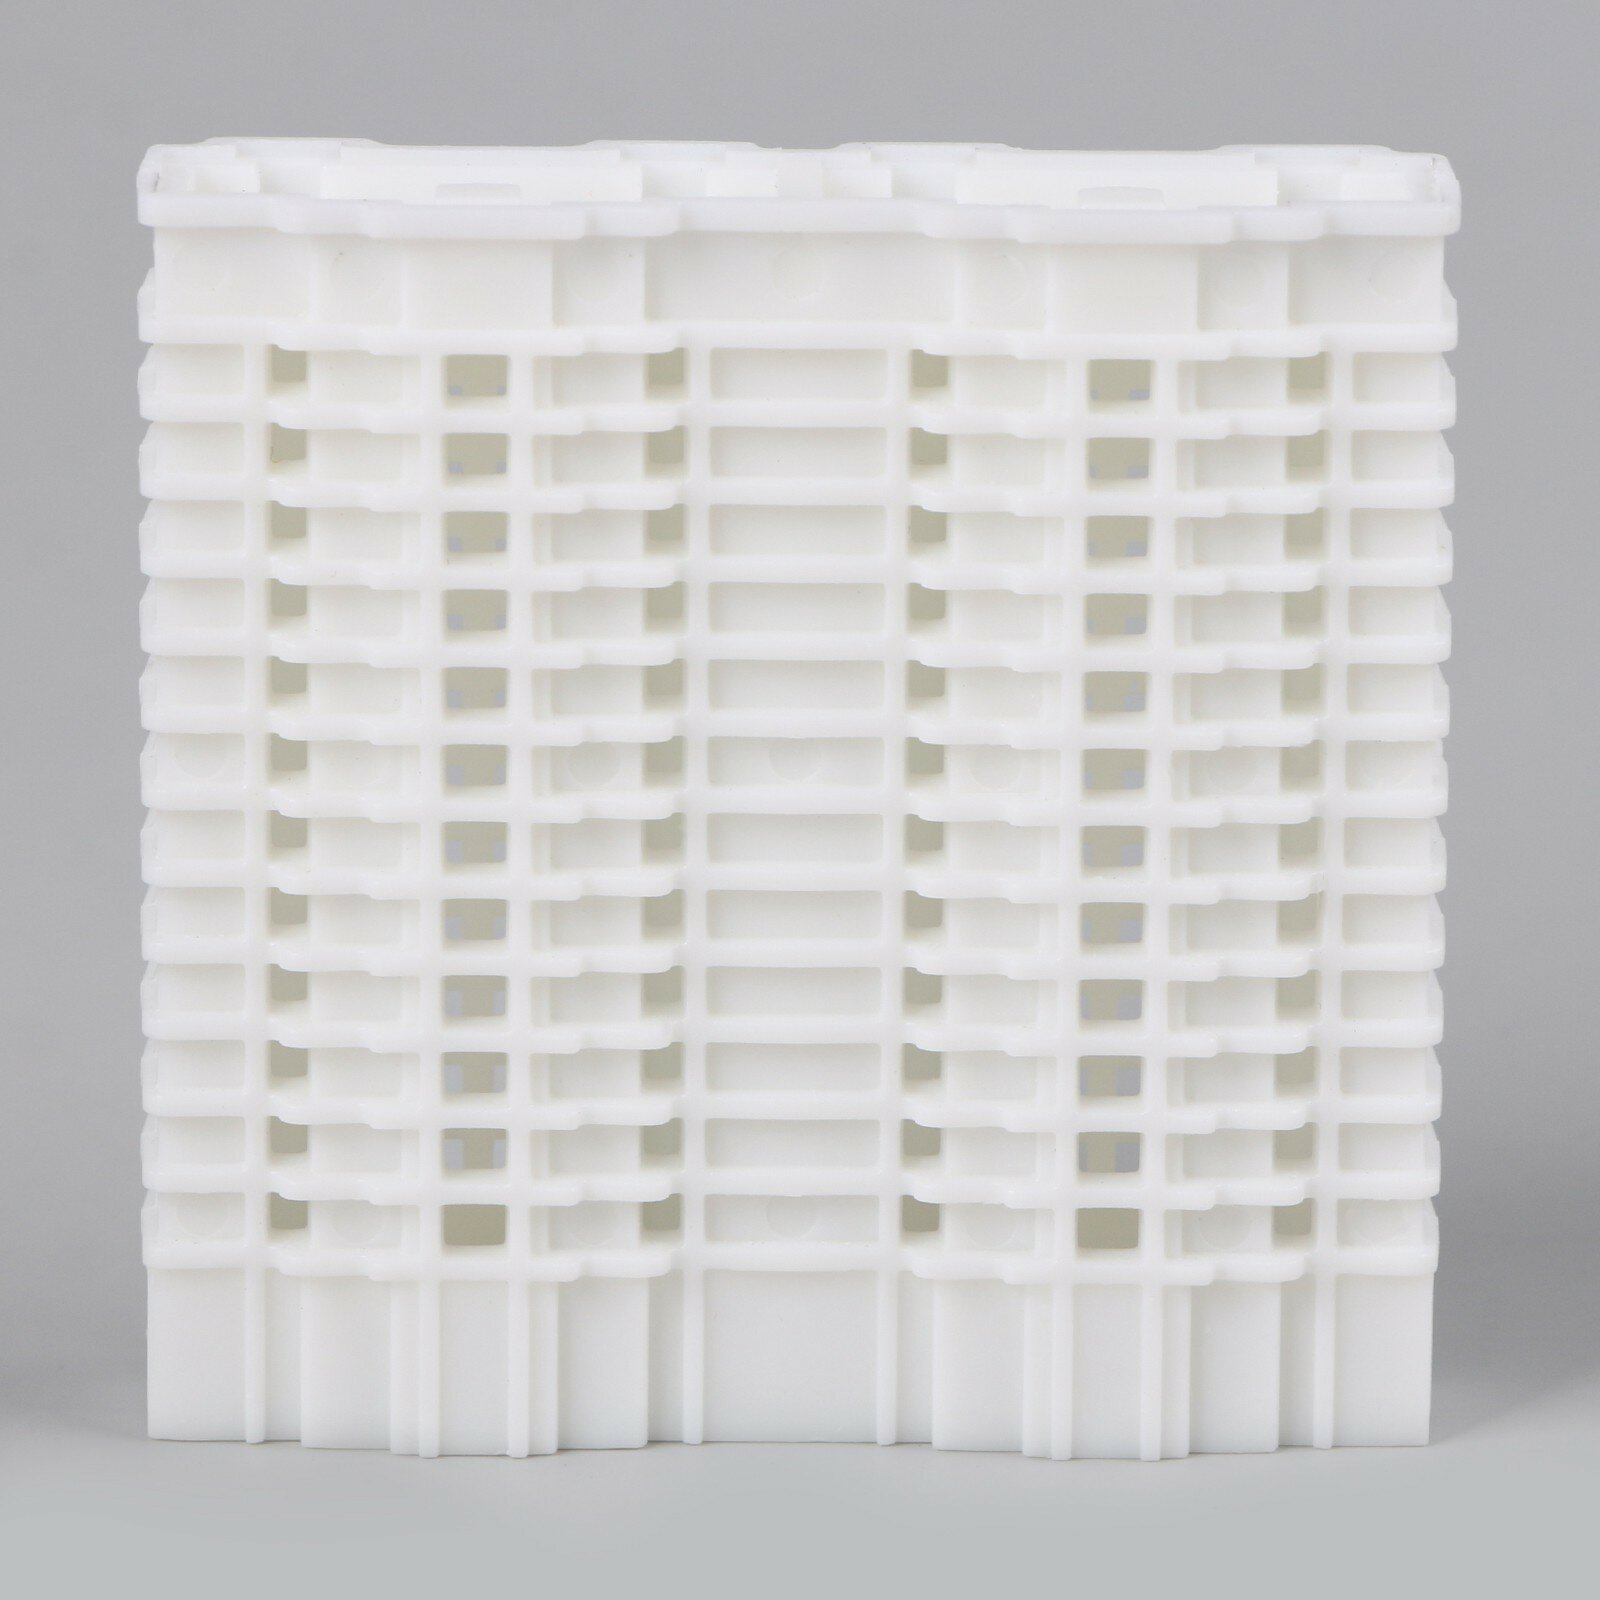 Модель «Здание» для изготовления макетов в масштабе 1:800 (1шт.)